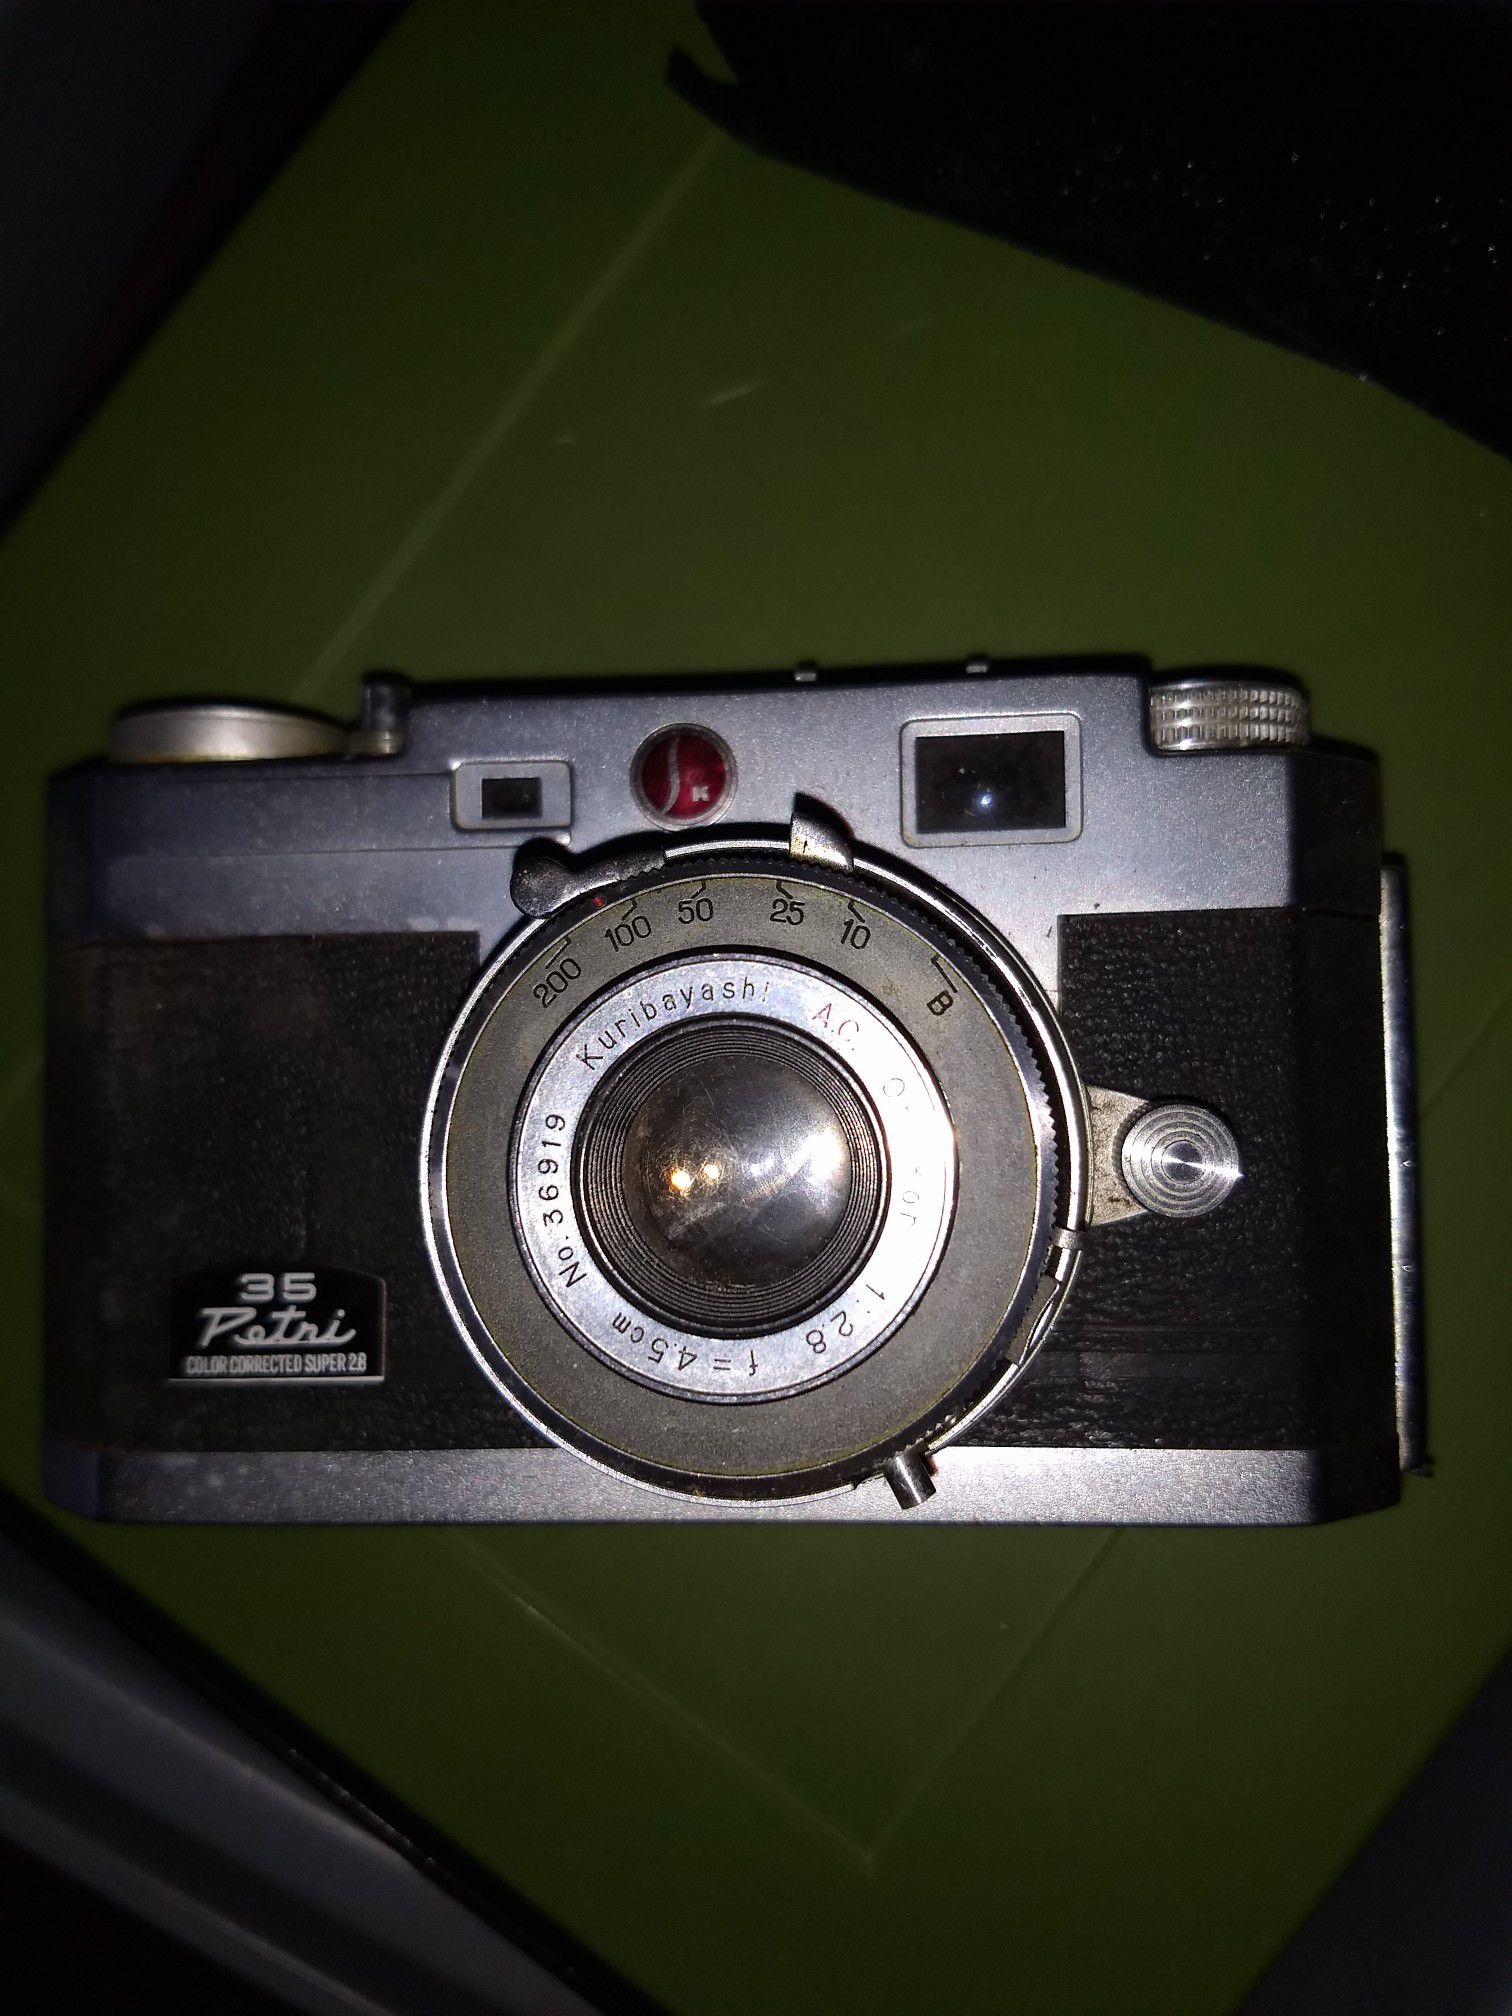 35mm petri camera color corrected super 28